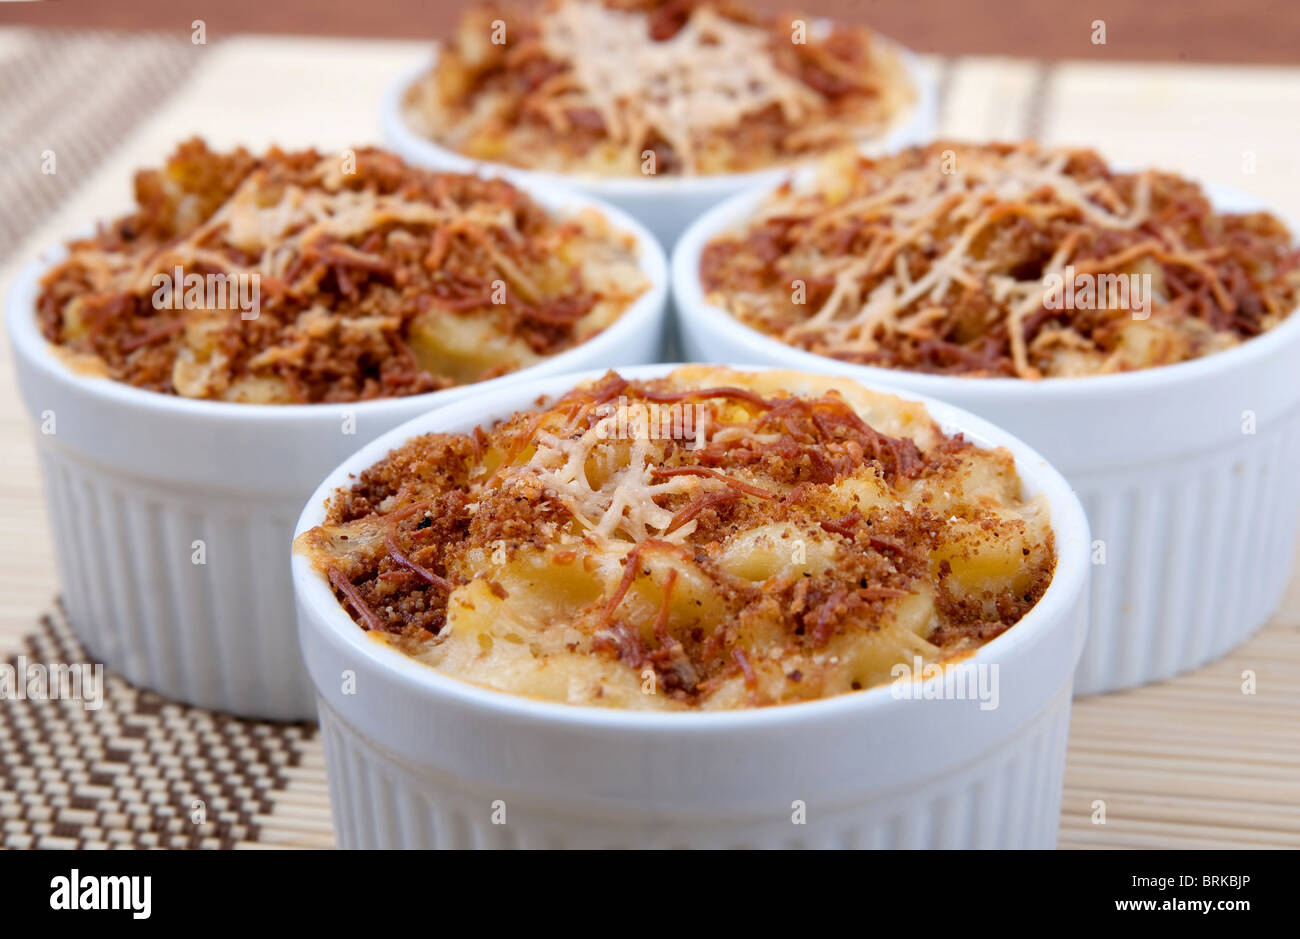 Quatre ramequins bols de macaroni au fromage fait maison recouvert de croûte de fromage grillé brun Banque D'Images